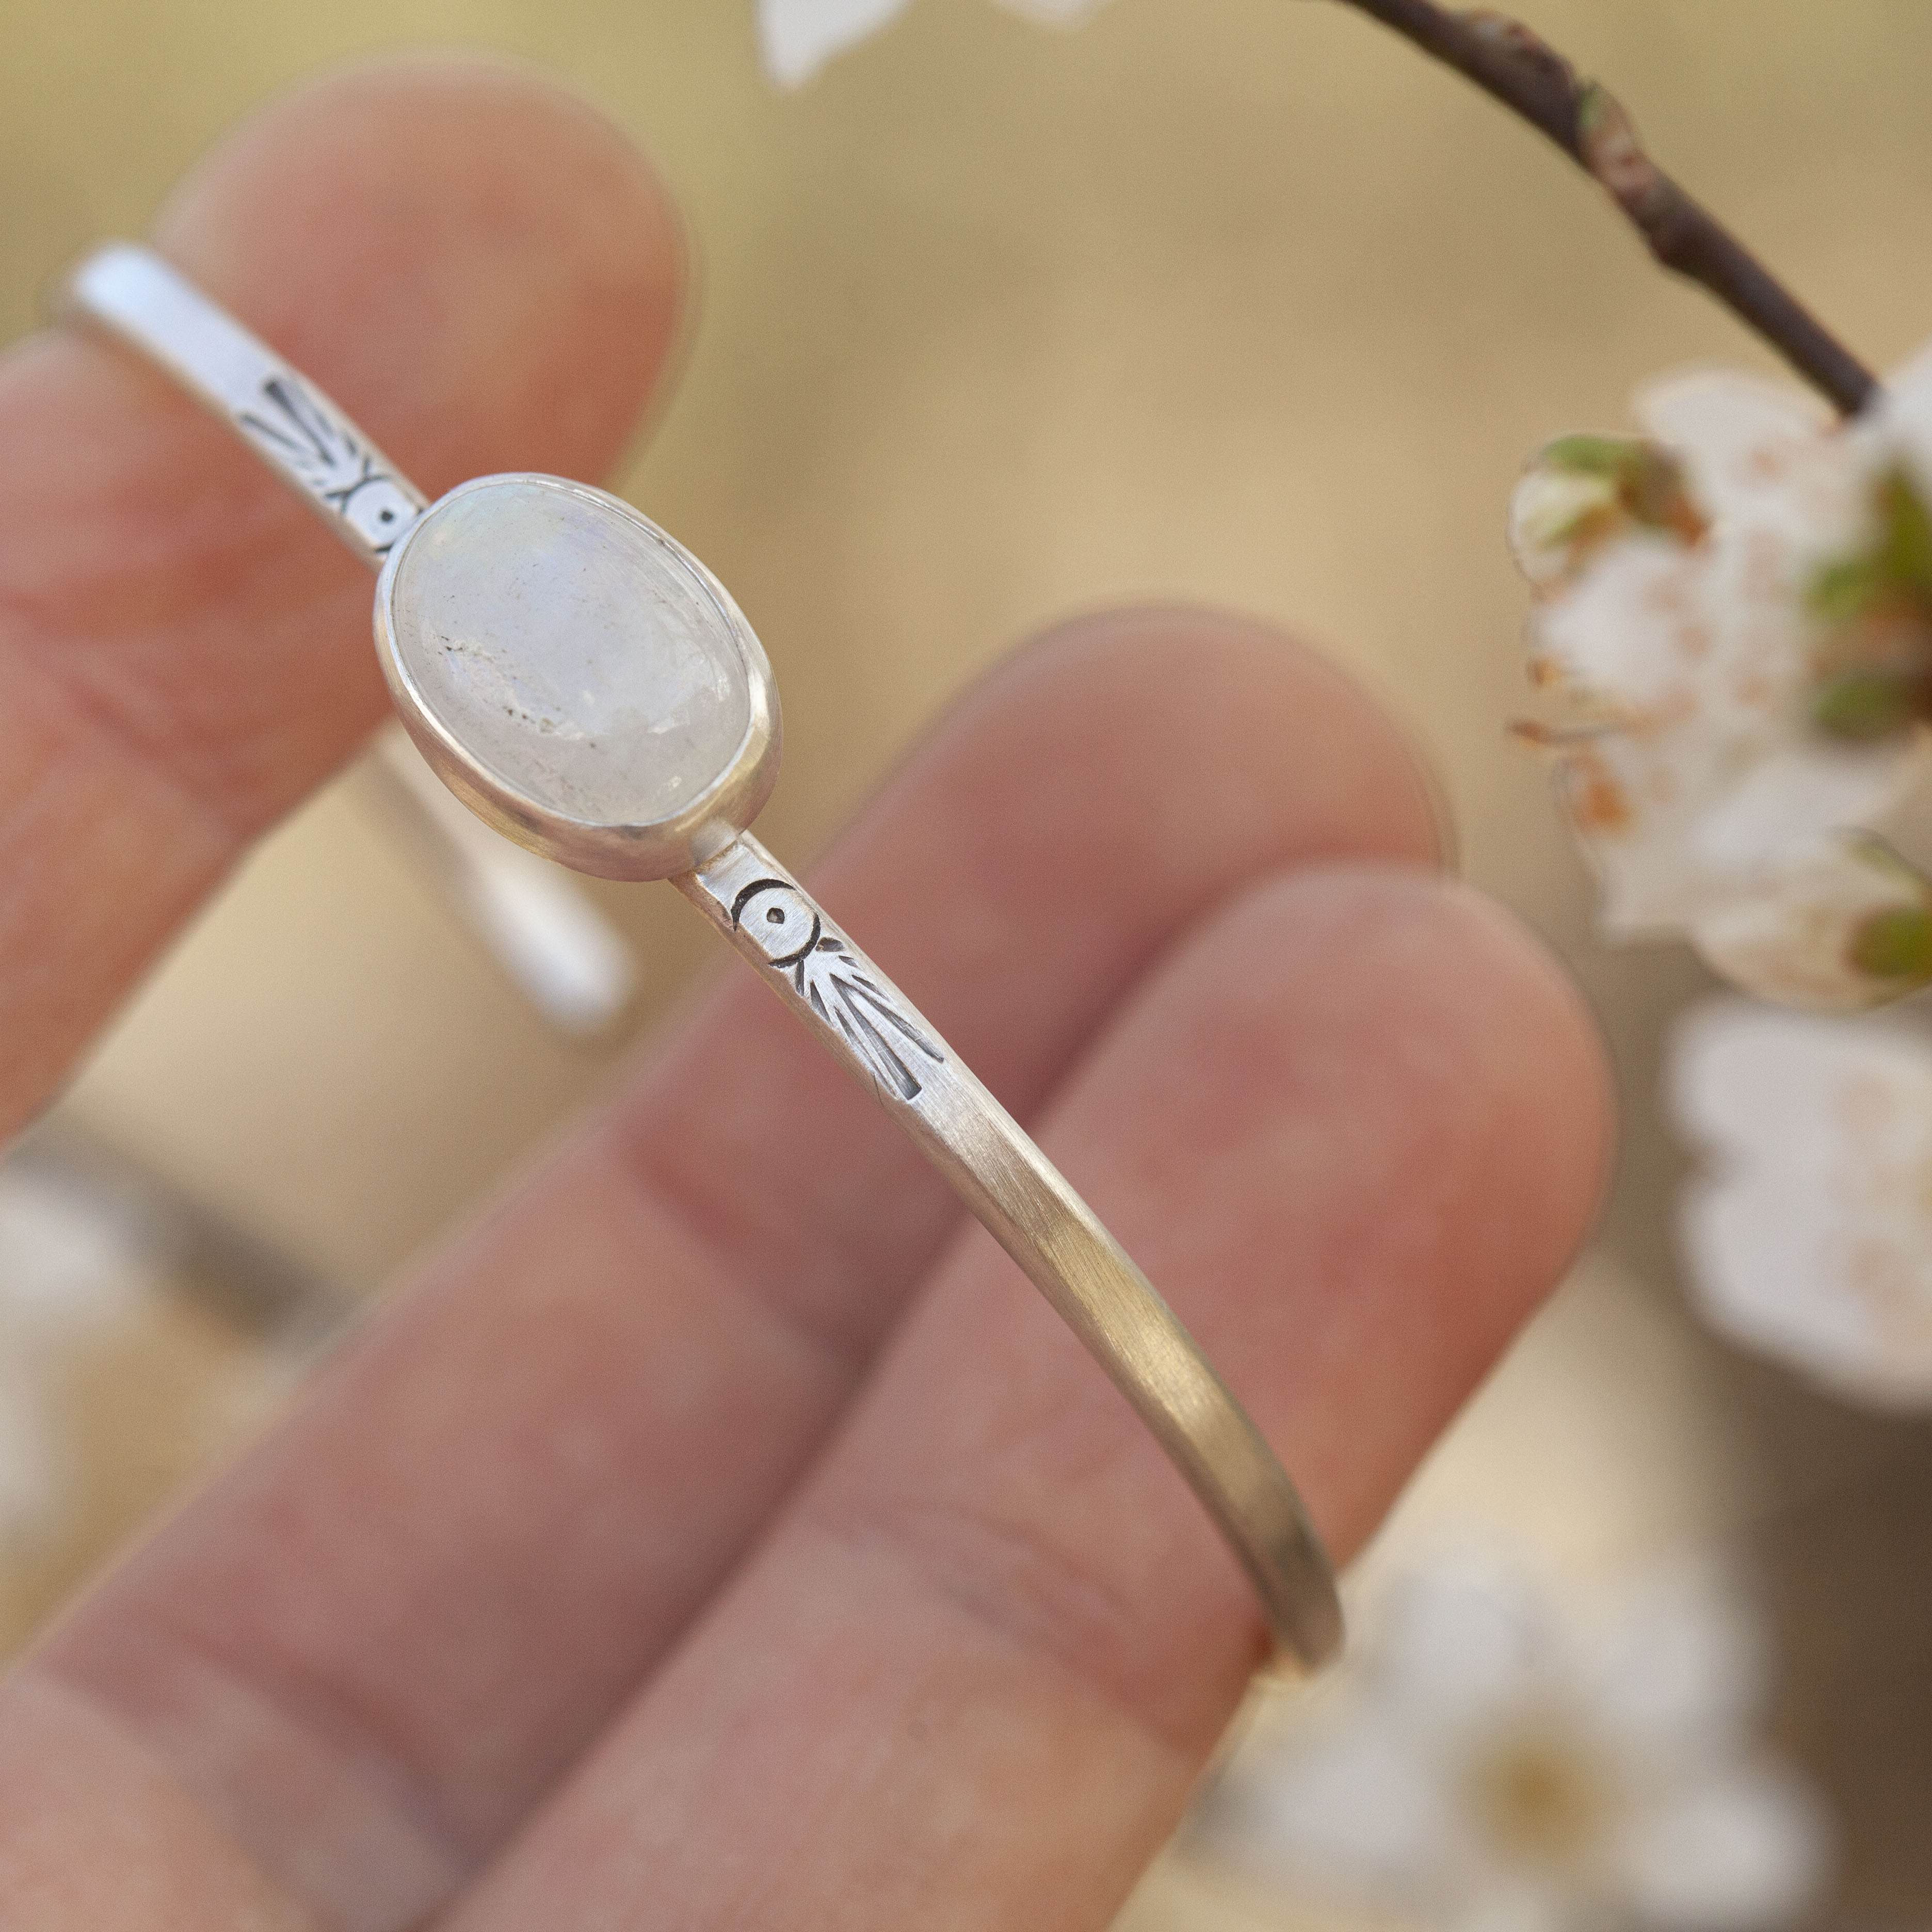 OOAK Ethnic bracelet with stone #2 • white labradorite, size 5,5m   (ready to ship)